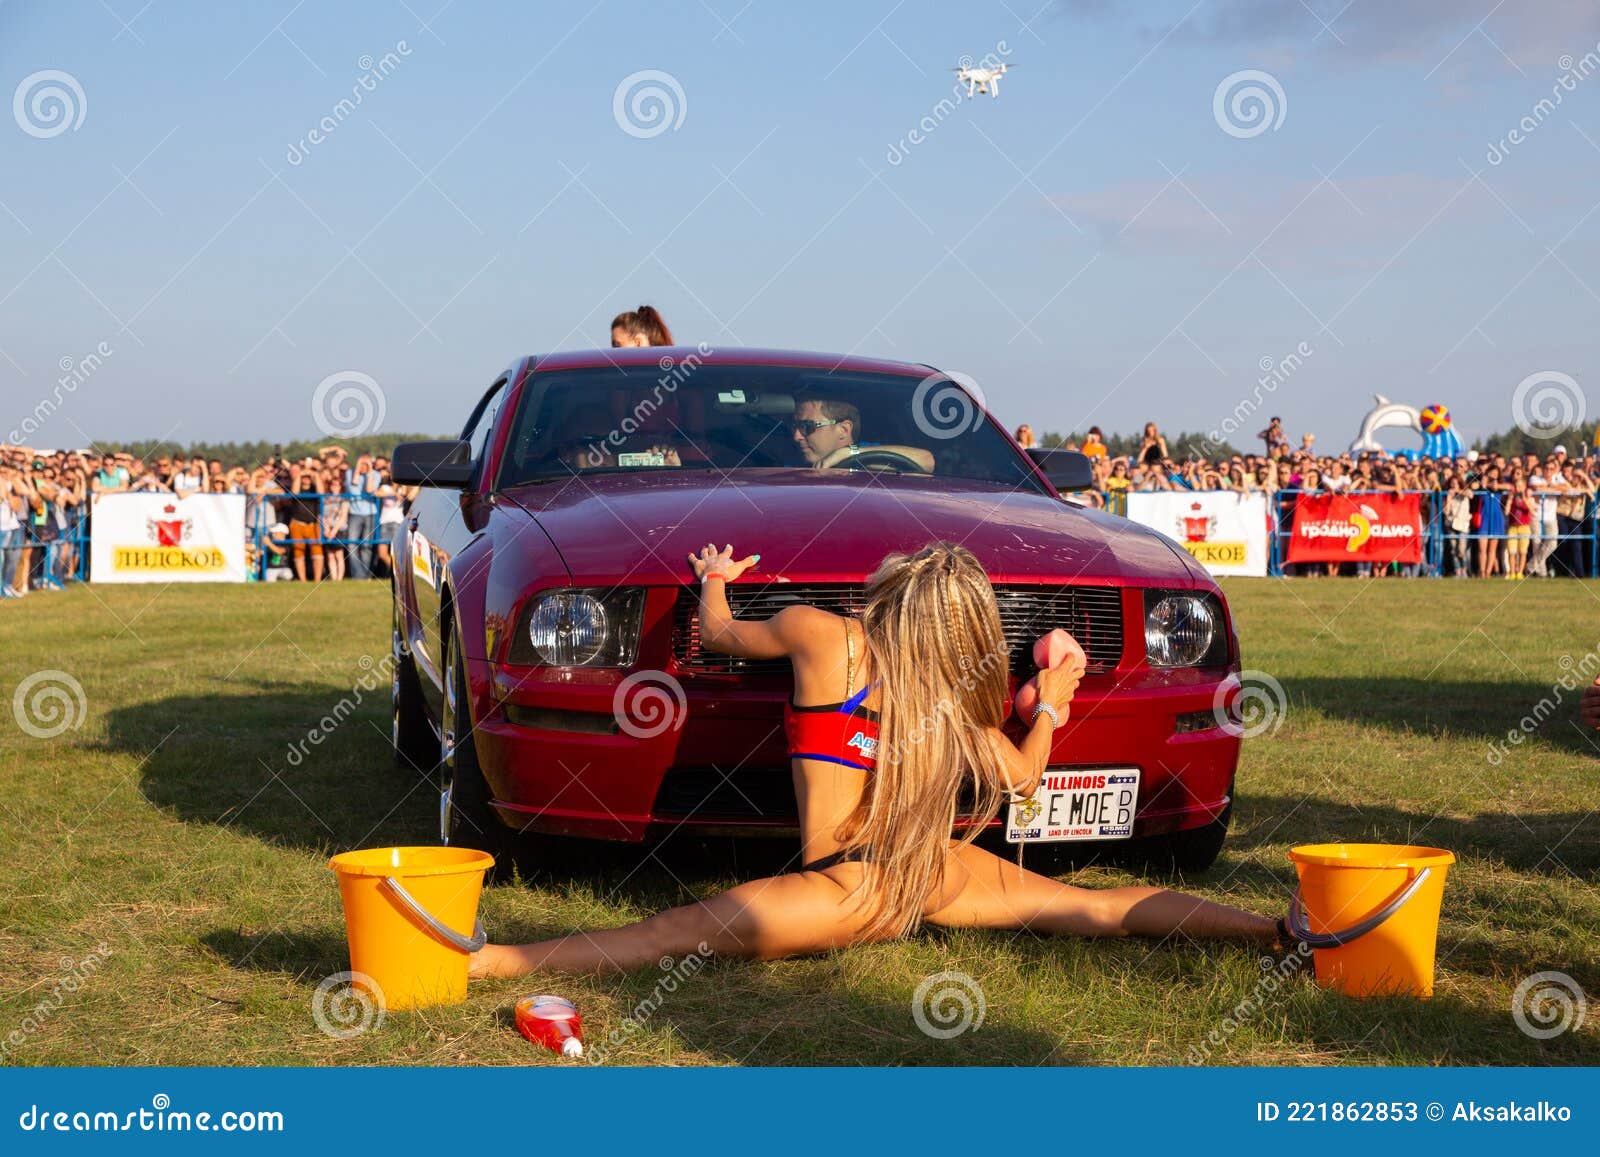 audrey gerard share nude car wash photos